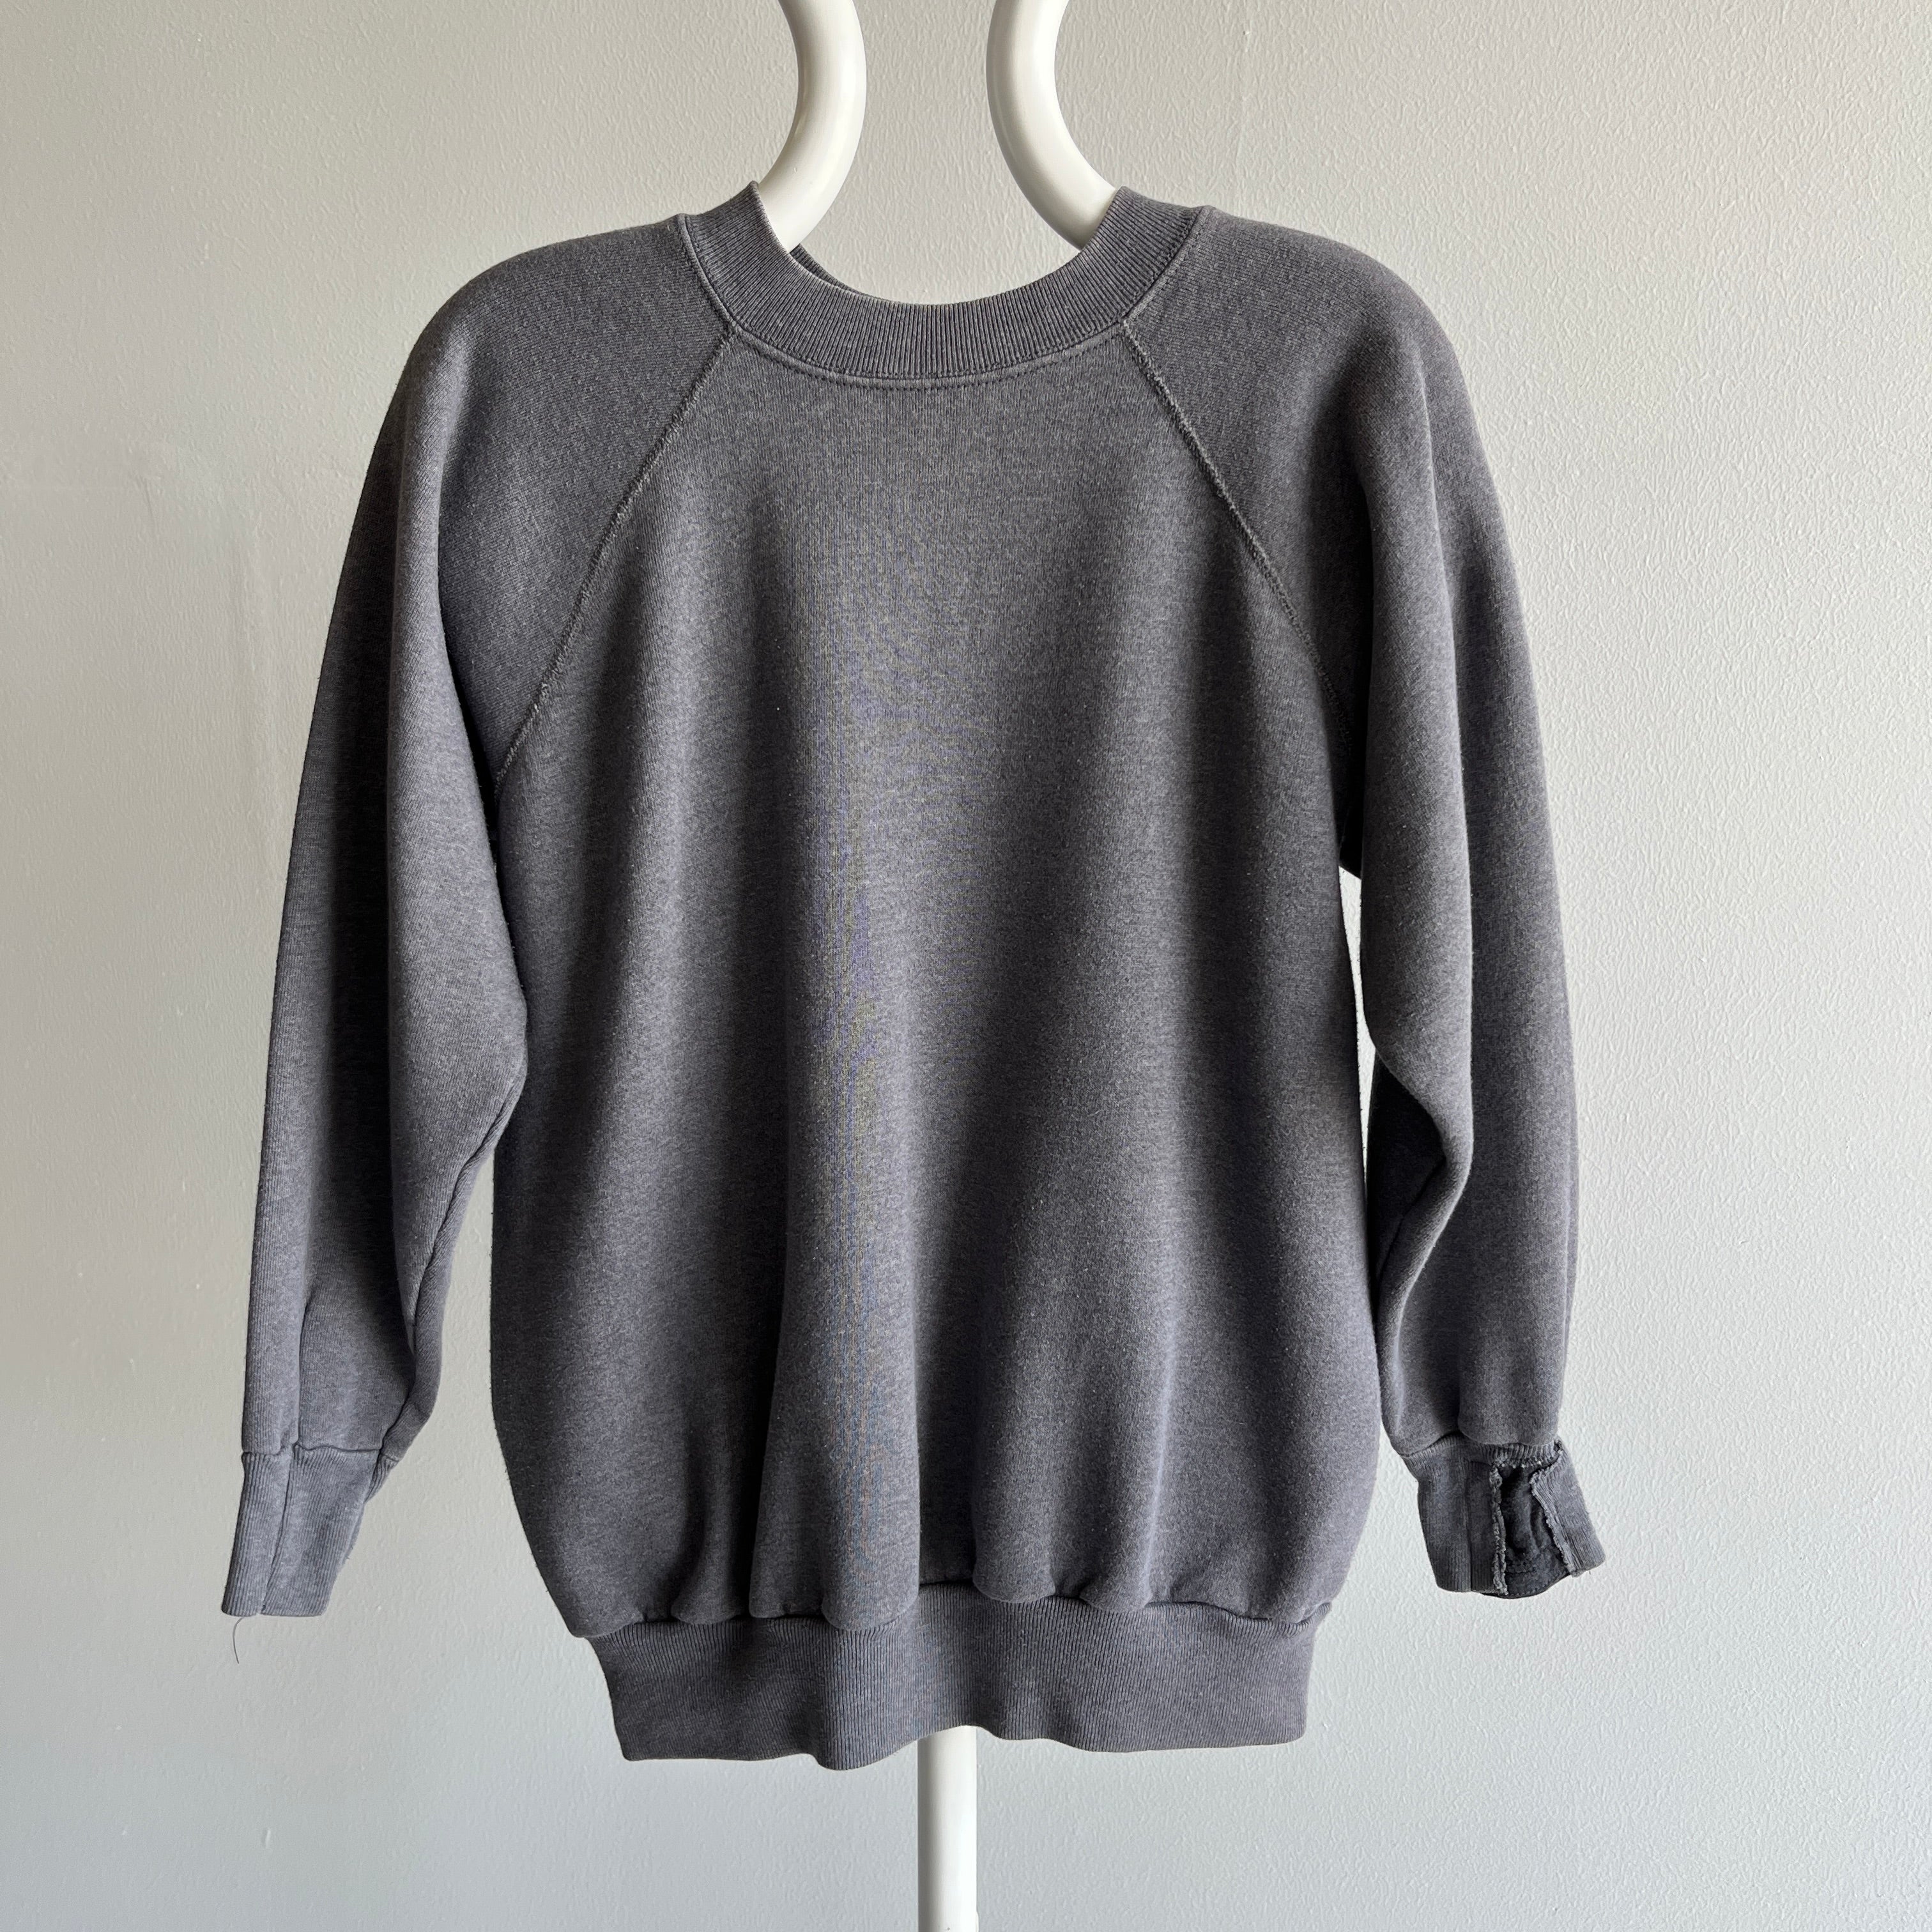 00s Heavy Weight Blank Black Sweatshirt par FOTL - Structuré